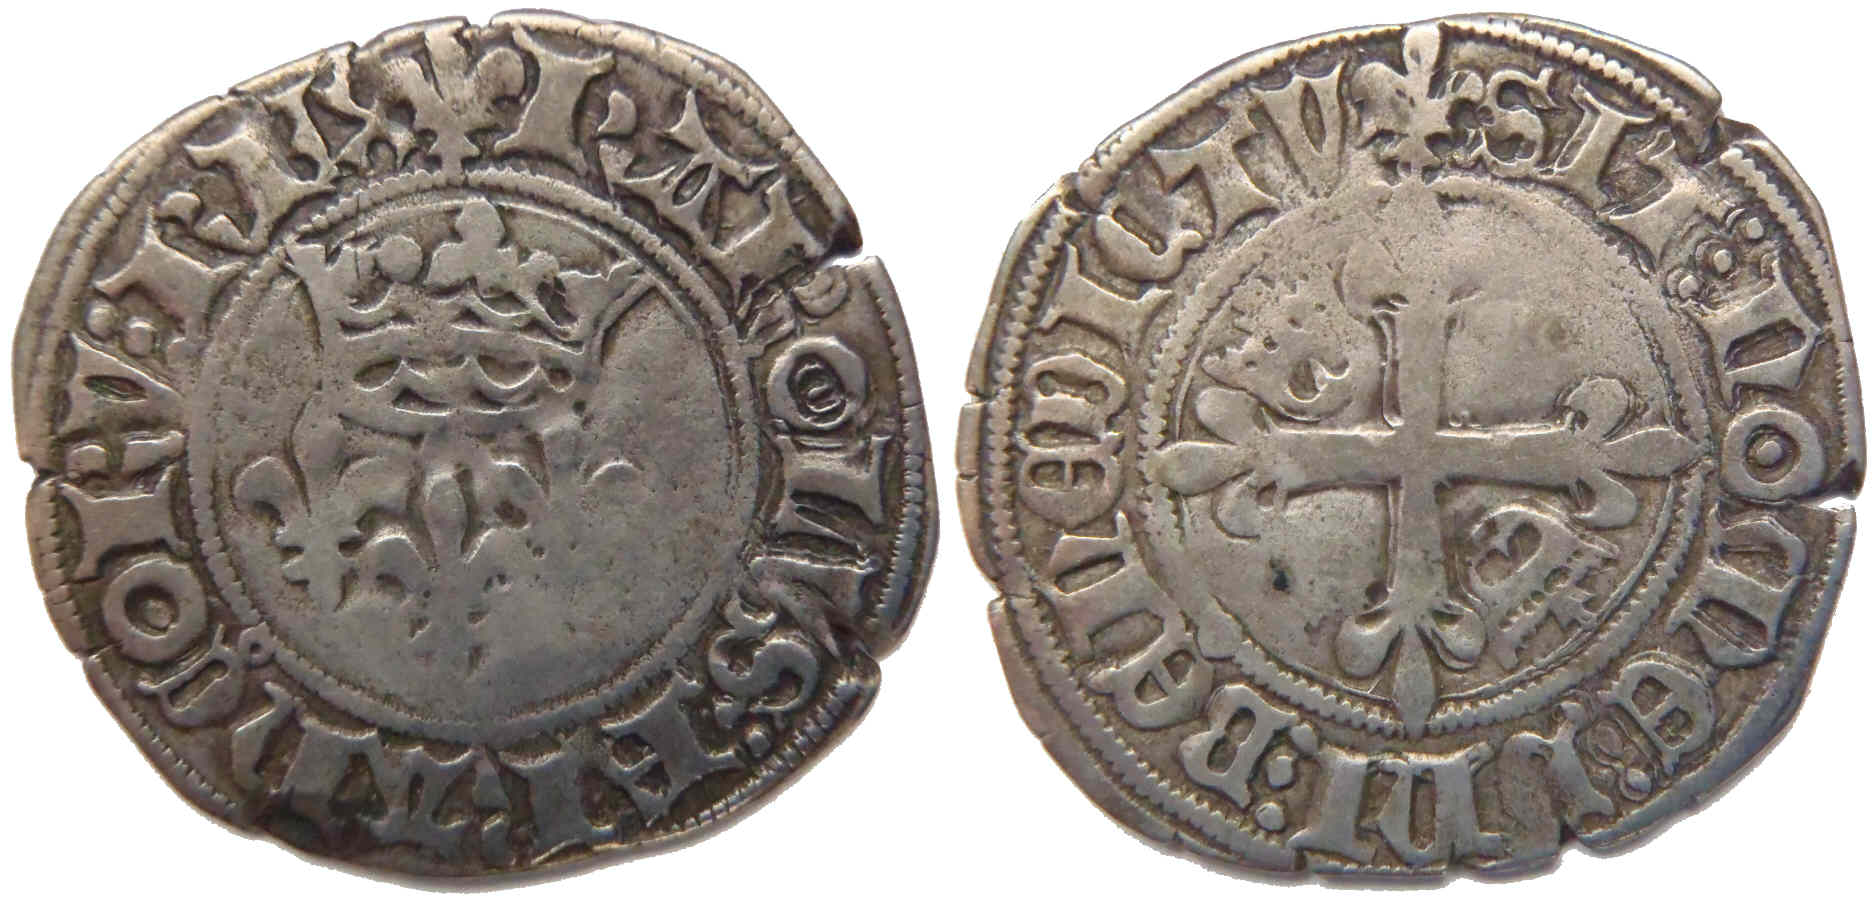 Approche typologique et chronologique des émissions de gros dits «florettes» au nom de Charles VI produites à Mâcon entre 1417 et 1421 – partie 6